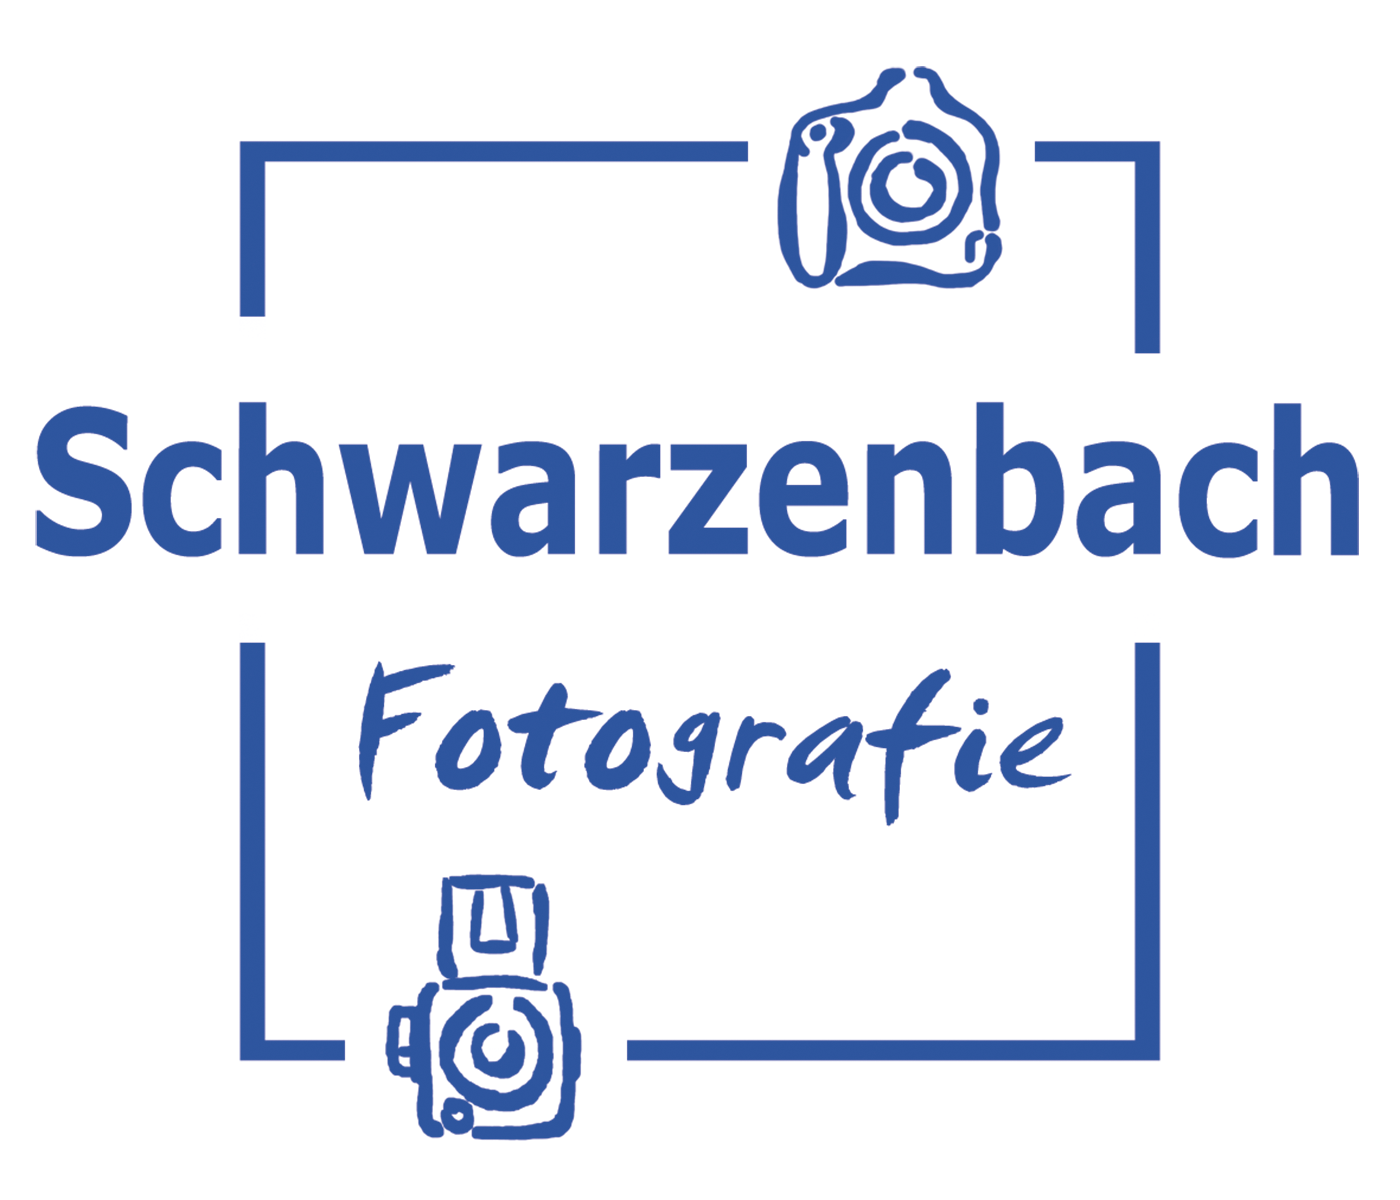 Schwarzenbach ist Fotografie Workshop Partner von AKTIVAS